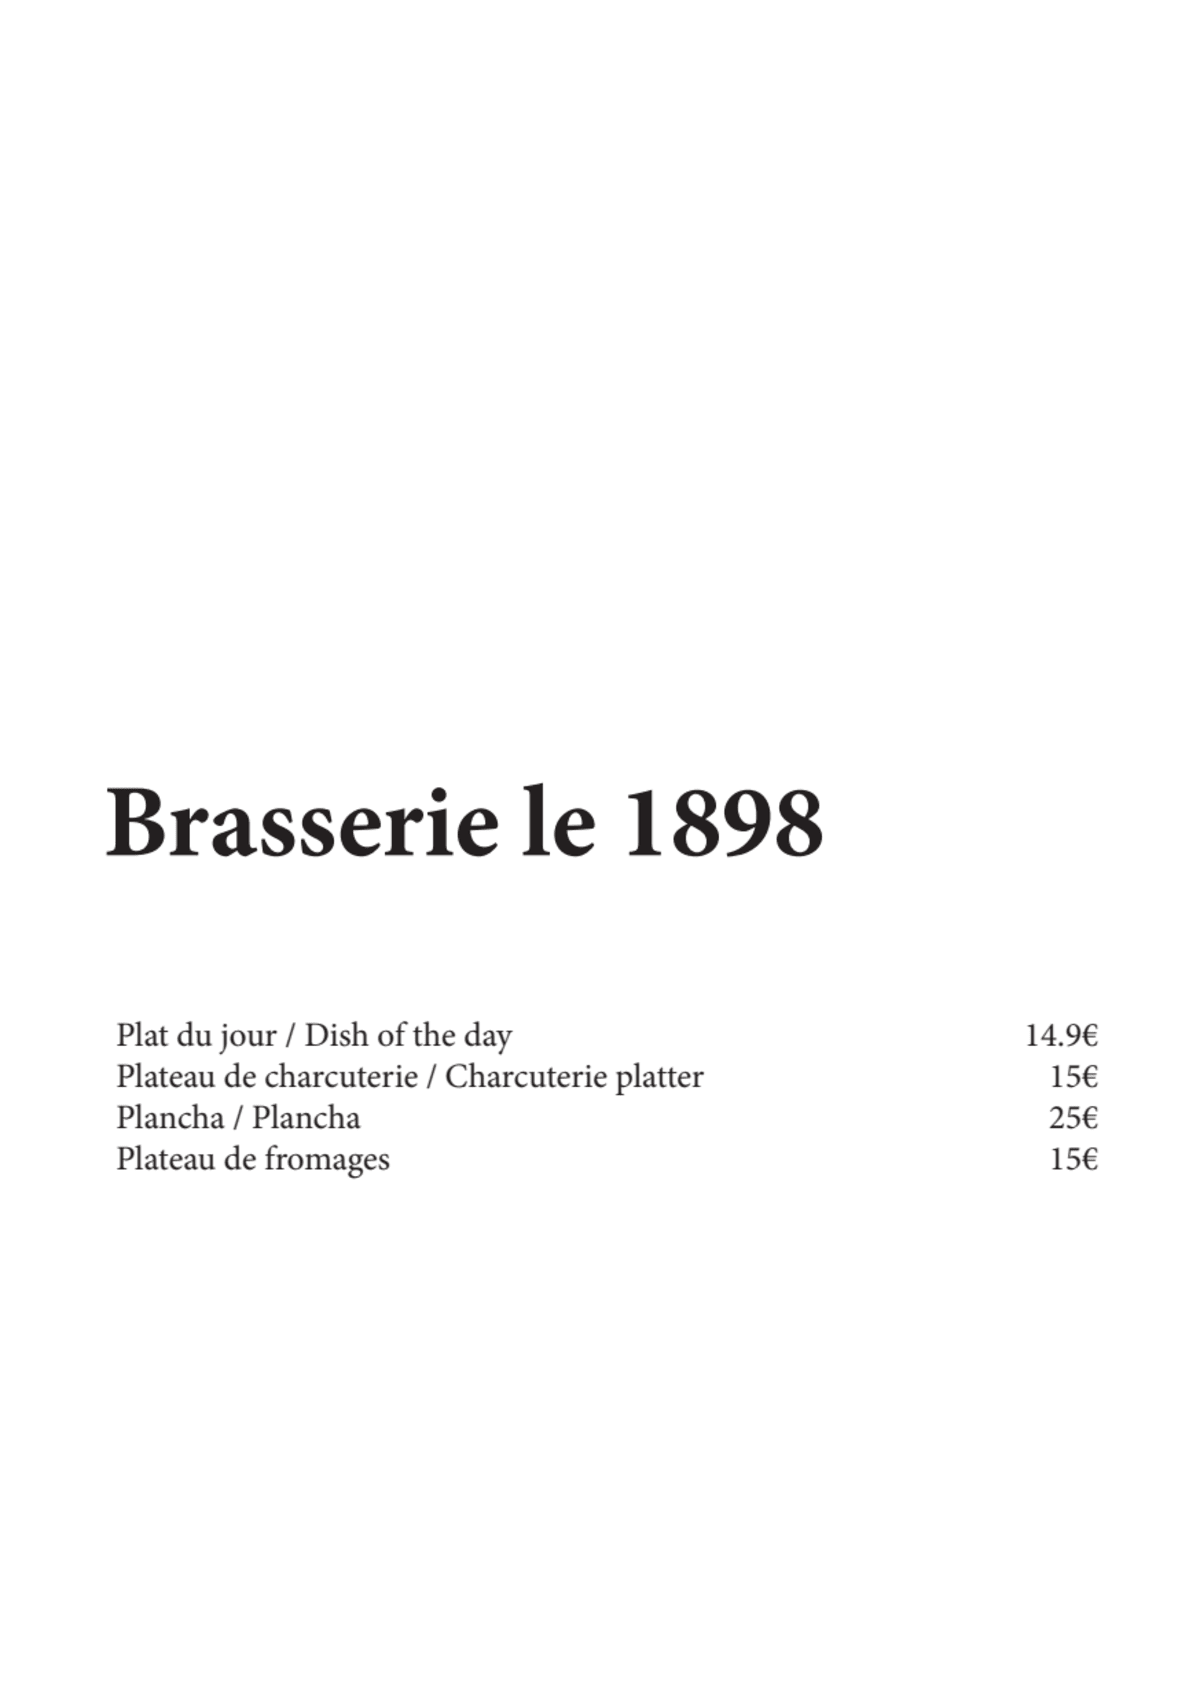 Brasserie le 1898 menu